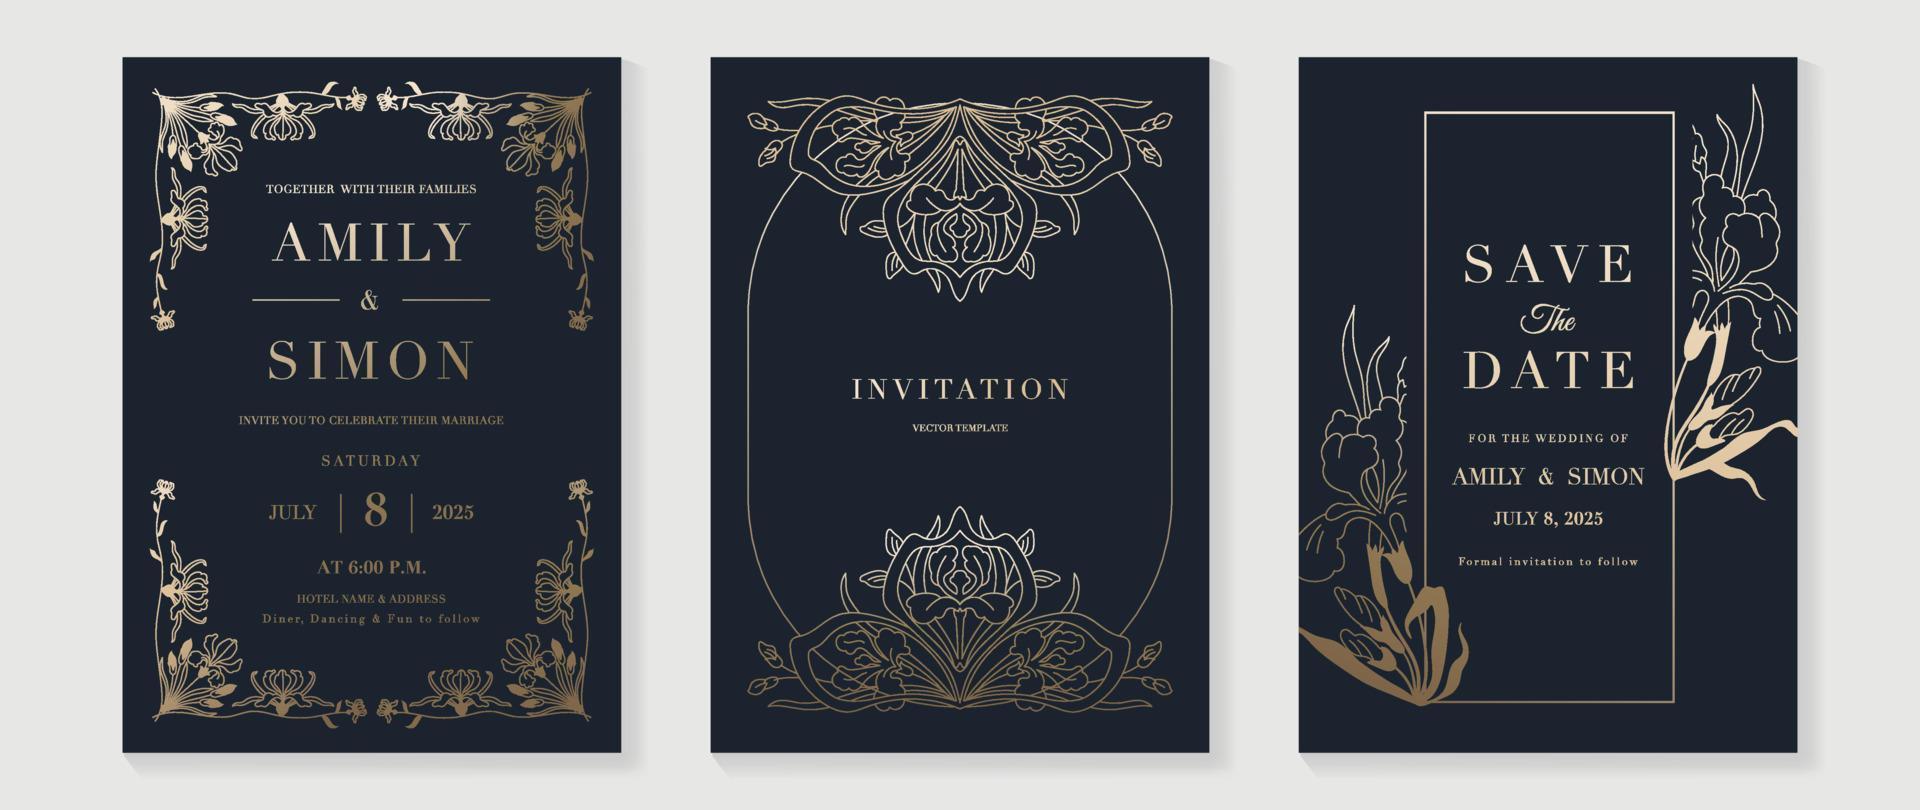 Luxus-Hochzeitseinladungskarte Hintergrundvektor. goldene textur botanische blumenblattzweiglinie kunst mit geometrischer rahmenschablone. designillustration für hochzeits- und vip-cover-vorlage, banner. vektor